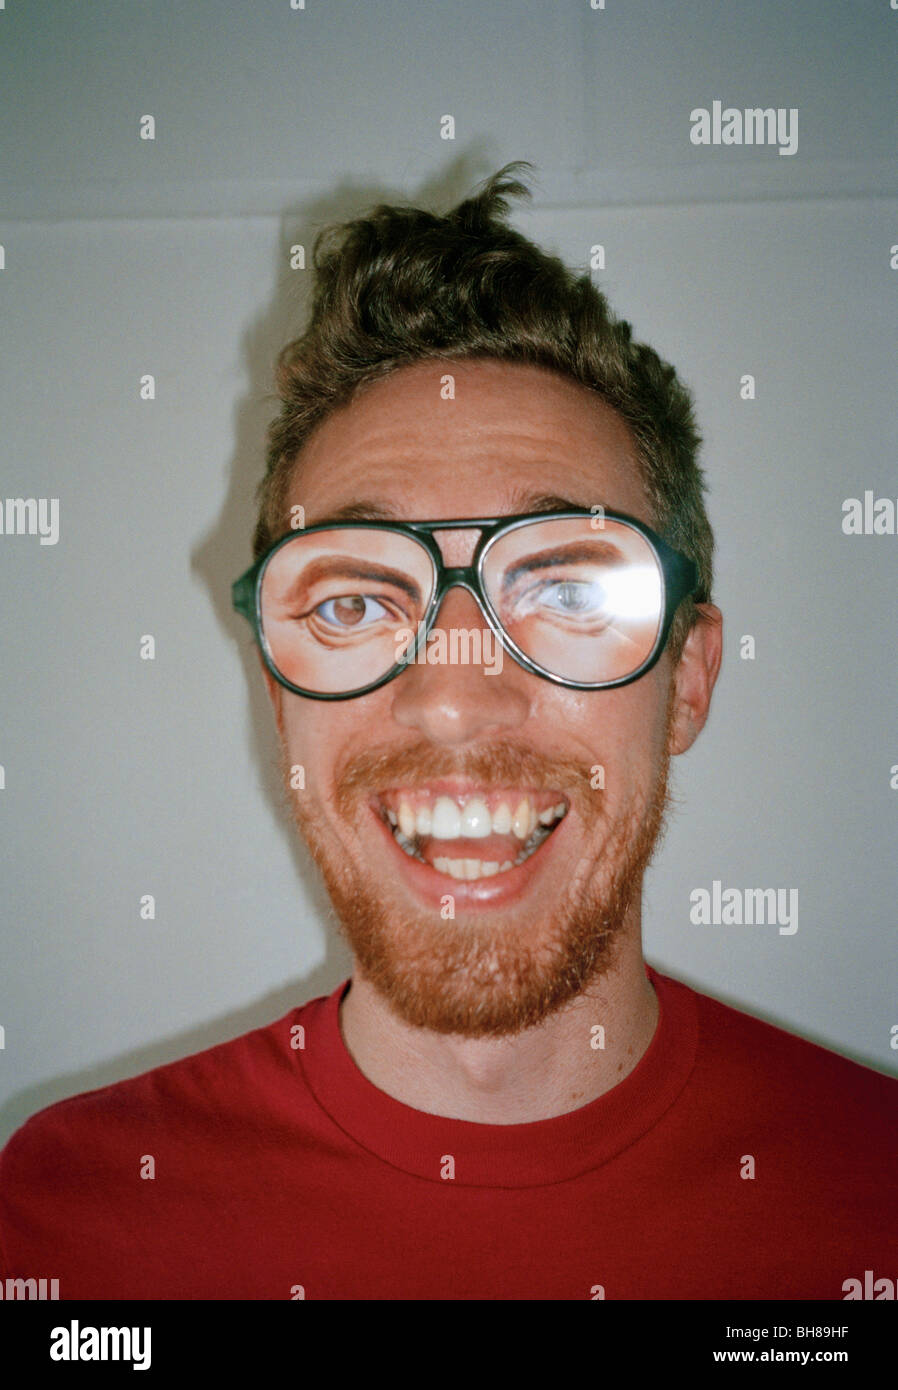 Un homme portant des lunettes et nouveauté smiling Banque D'Images